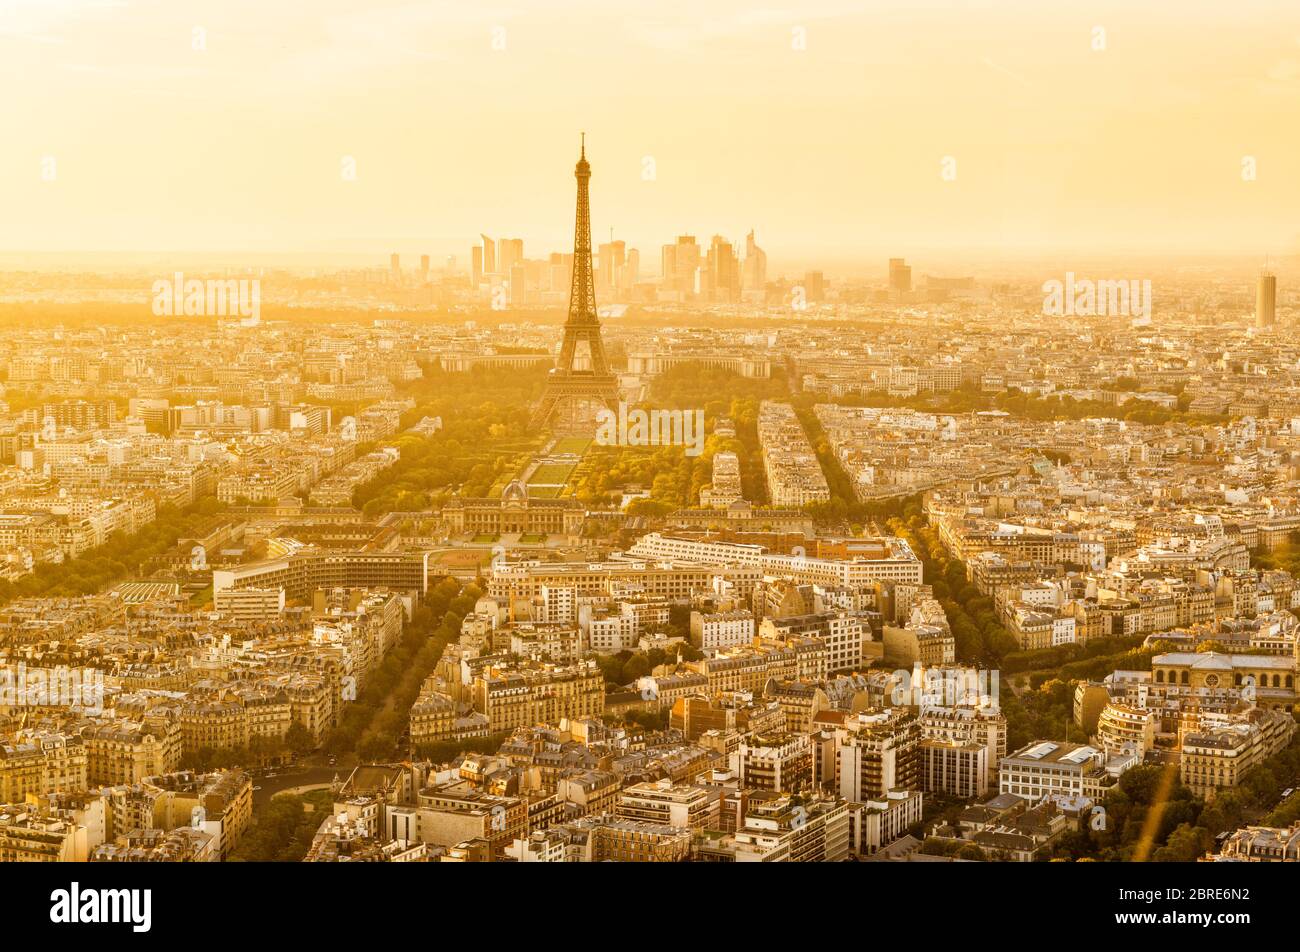 Vista panoramica aerea di Parigi con la Torre Eiffel al tramonto. Quartiere la Defense sullo sfondo. Foto Stock